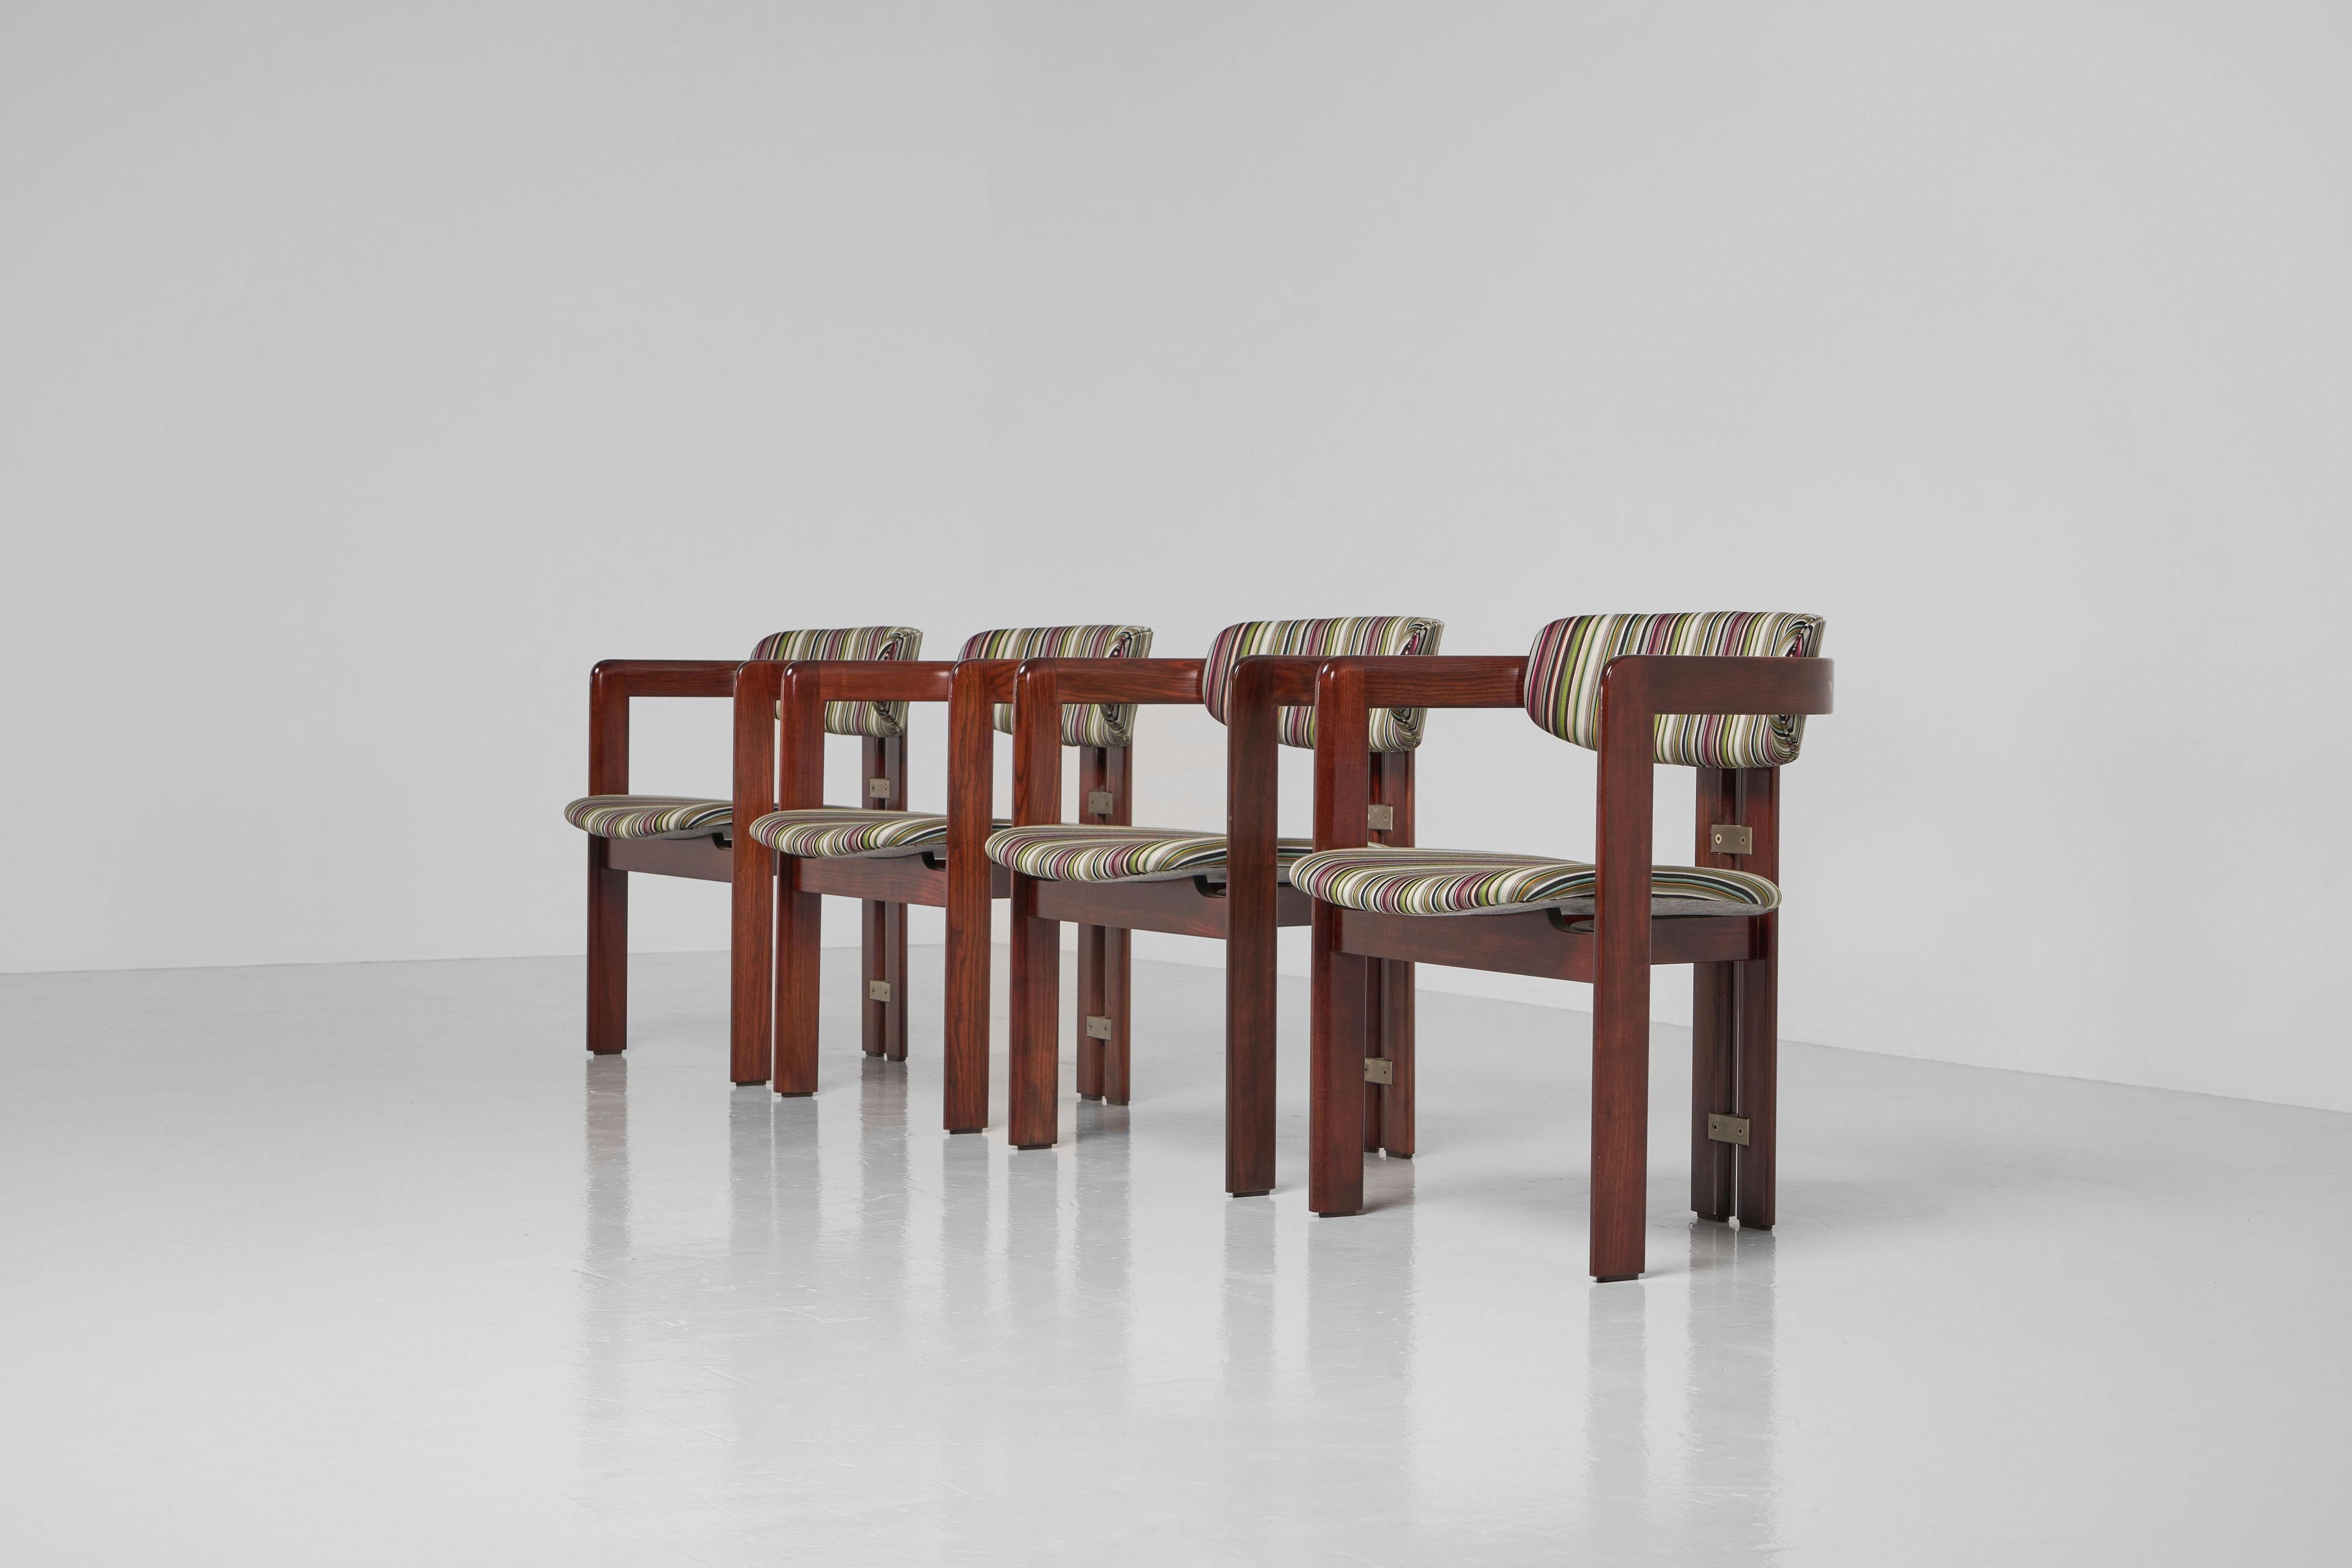 Ein fantastisches, neu gepolstertes Set von 4 so genannten 'Pamplona'-Stühlen, entworfen von Augusto Savini und hergestellt von Pozzi, Italien 1965. Diese sehr eleganten und bequemen Esszimmerstühle haben eine Struktur aus massivem Eschenholz, das